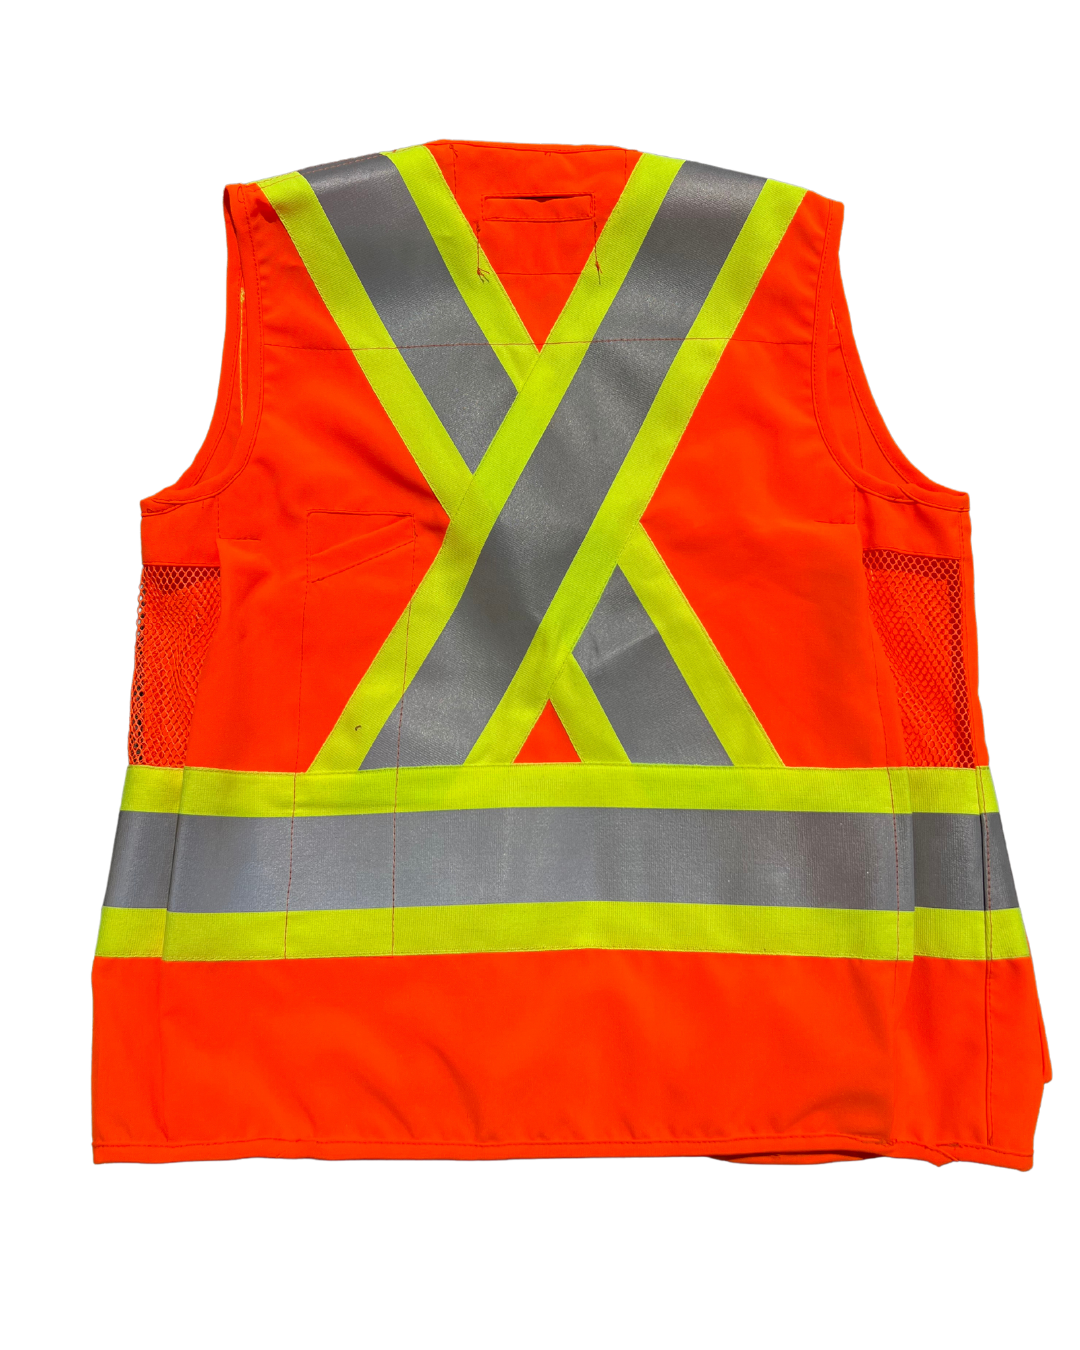 Surveyor Vest, Orange c/w 4" Triple Tape